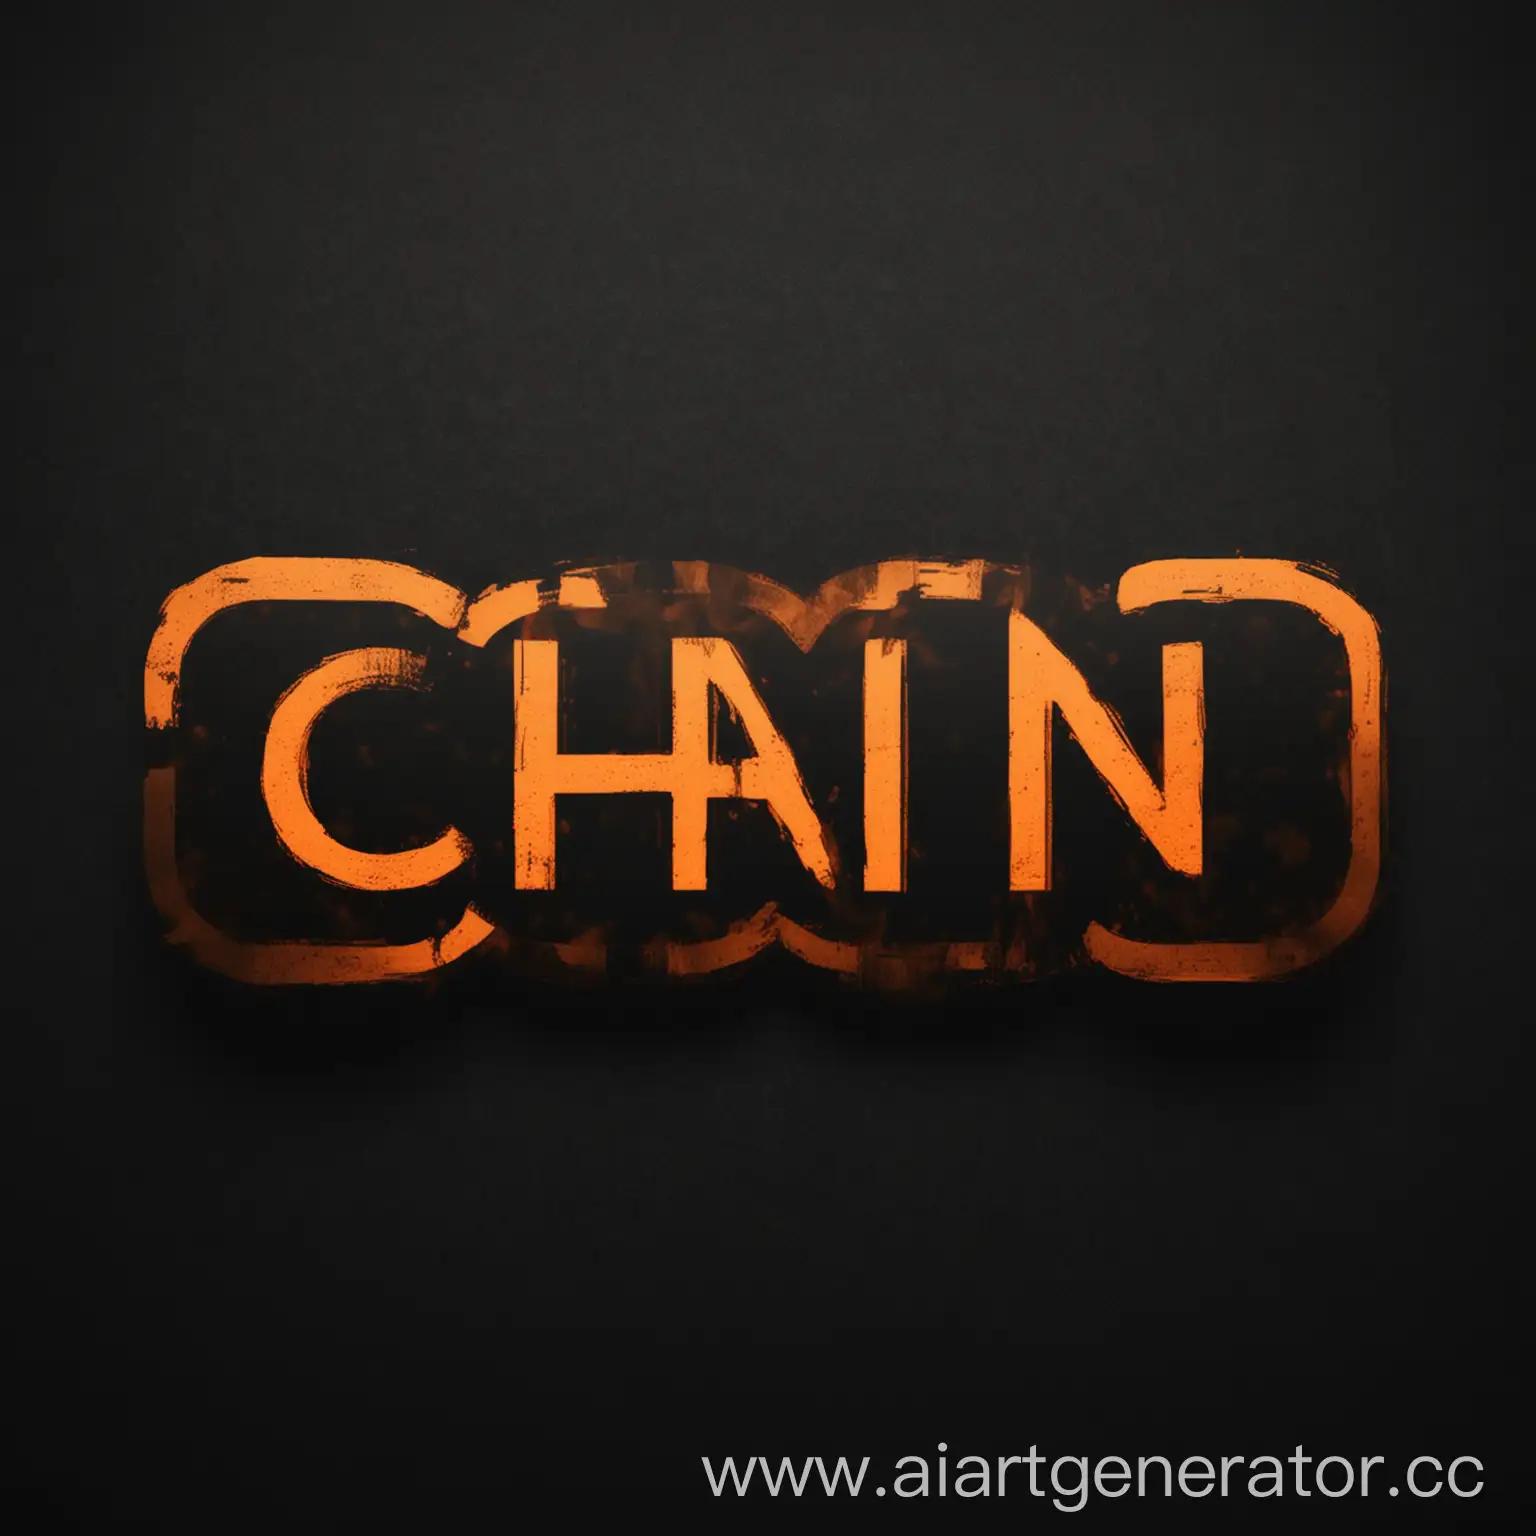 Сделай картинки для контента с логотипом PMChain на черном фоне с оранжевыми буквами